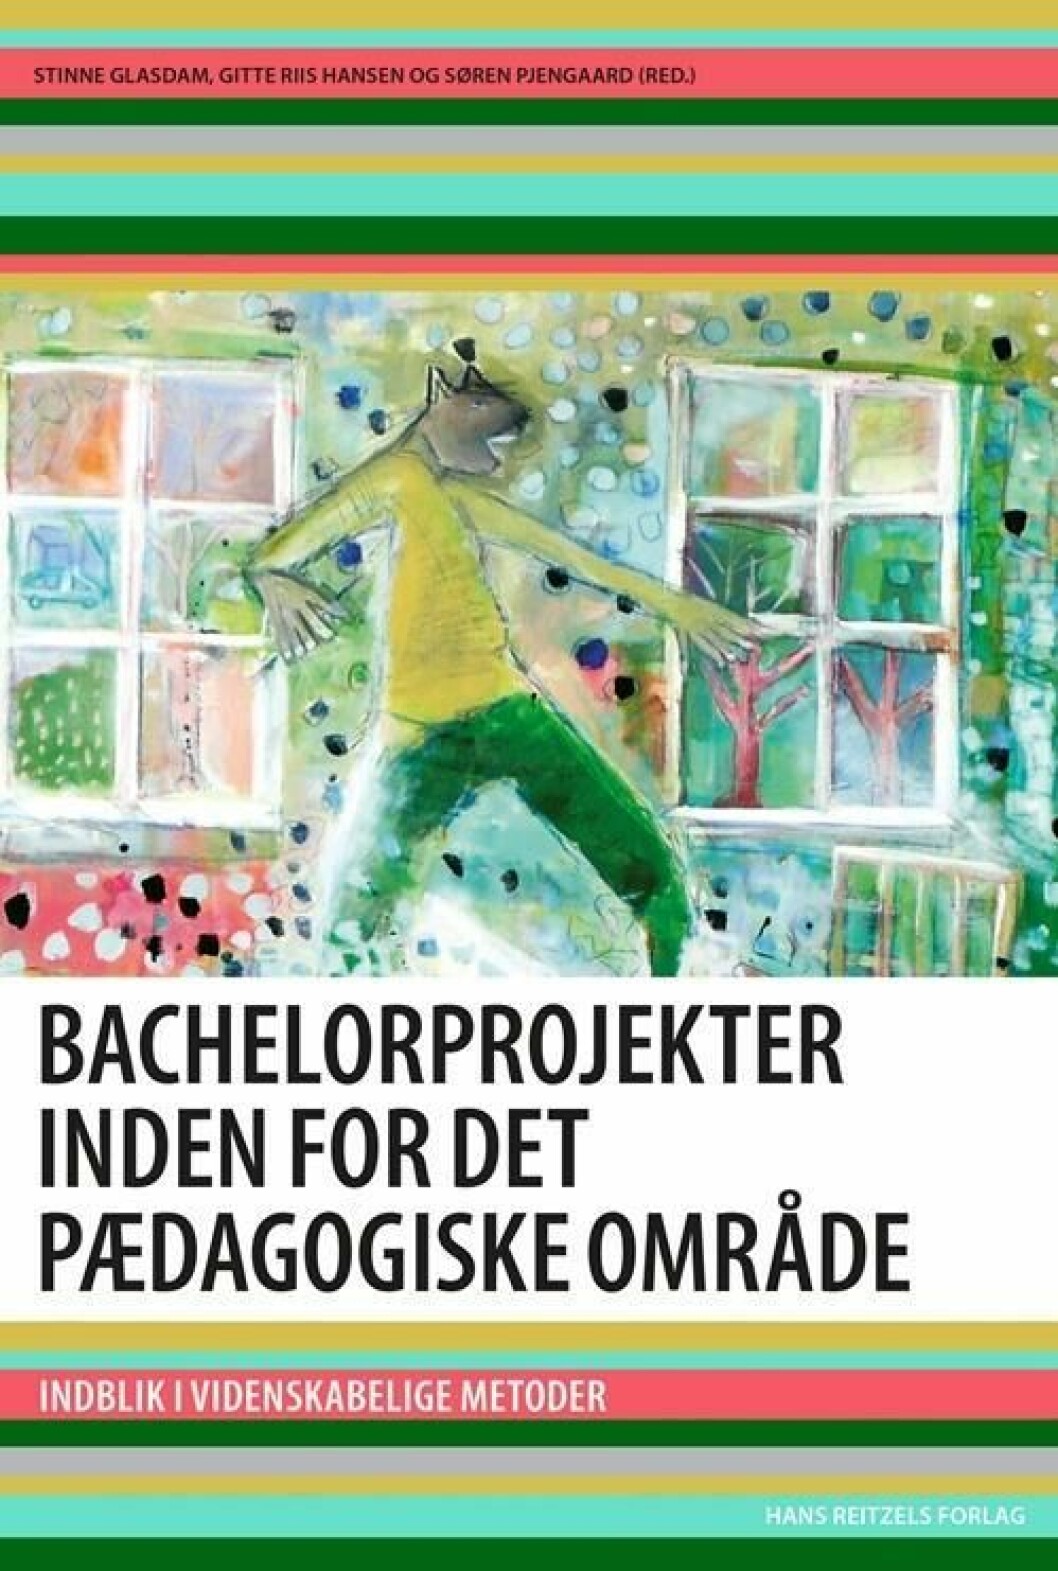 Bachelorprojekter inden for det pædagogiske område